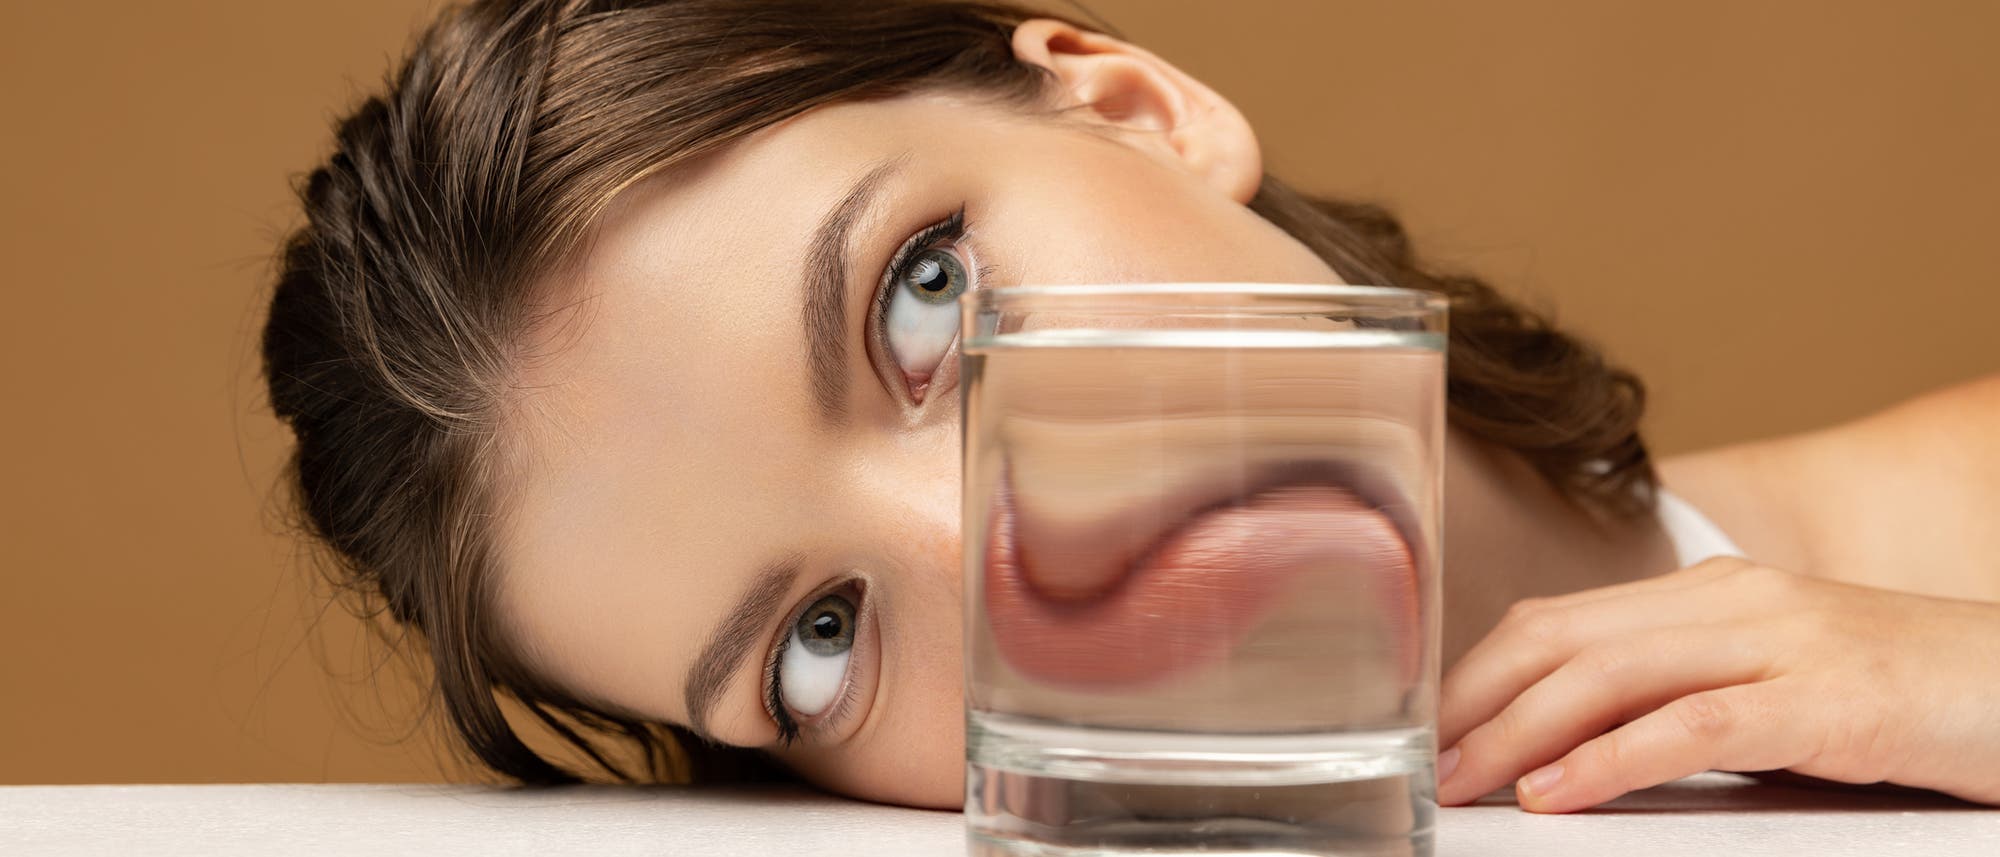 Gesicht einer jungen Frau, deren Mund hinter einem Glas verzerrt erscheint 